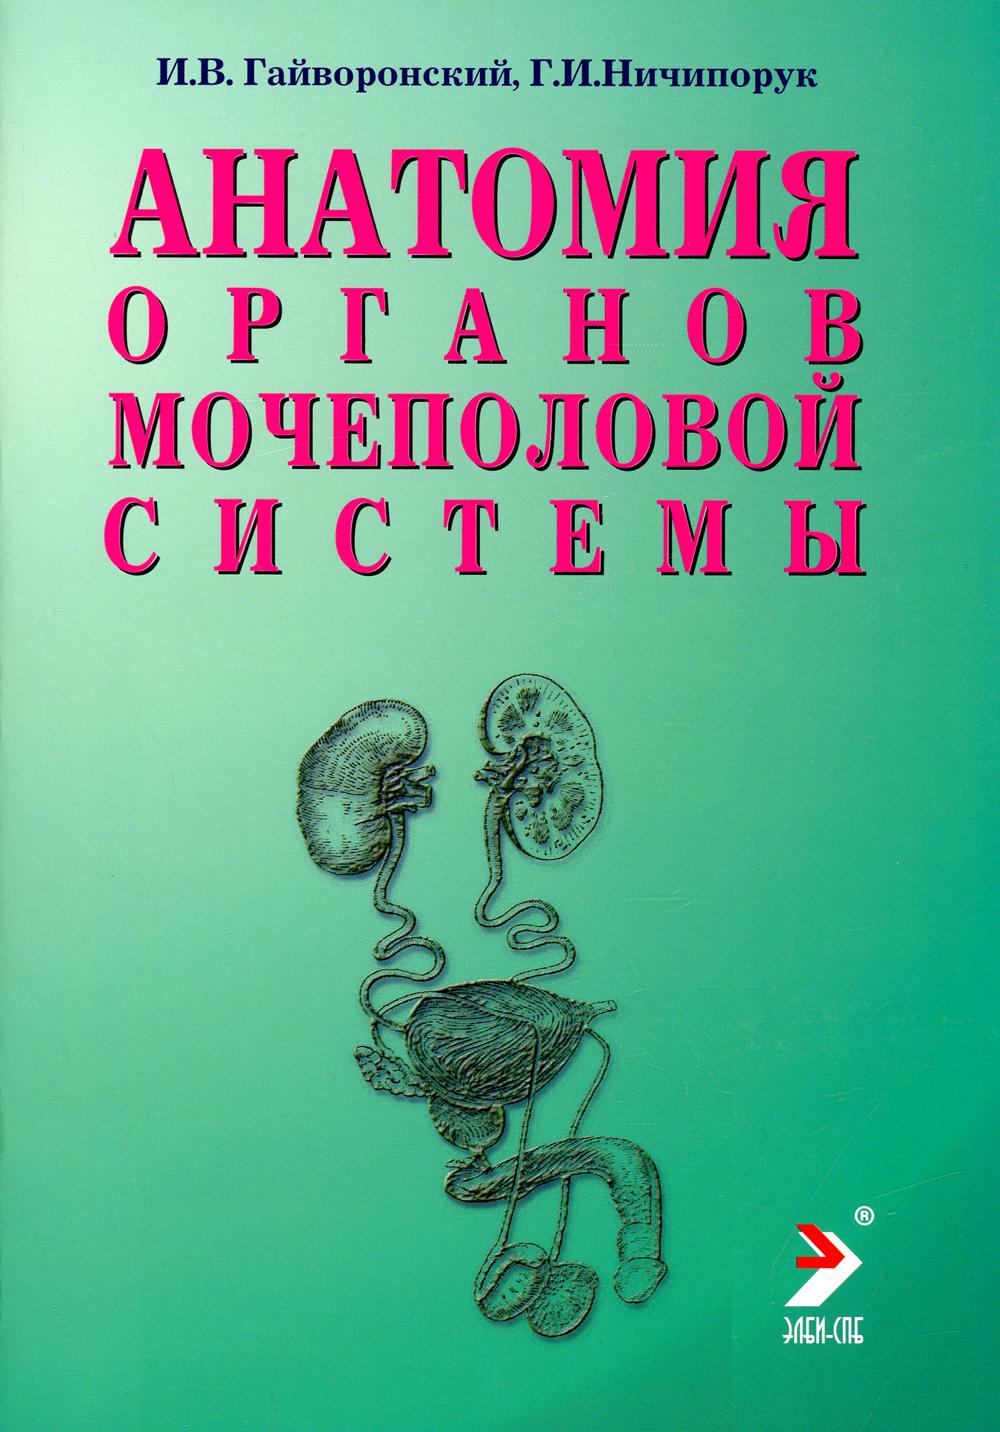 Анатомия органов мочеполовой системы: Учебное пособие. 10-е изд., перераб. и доп